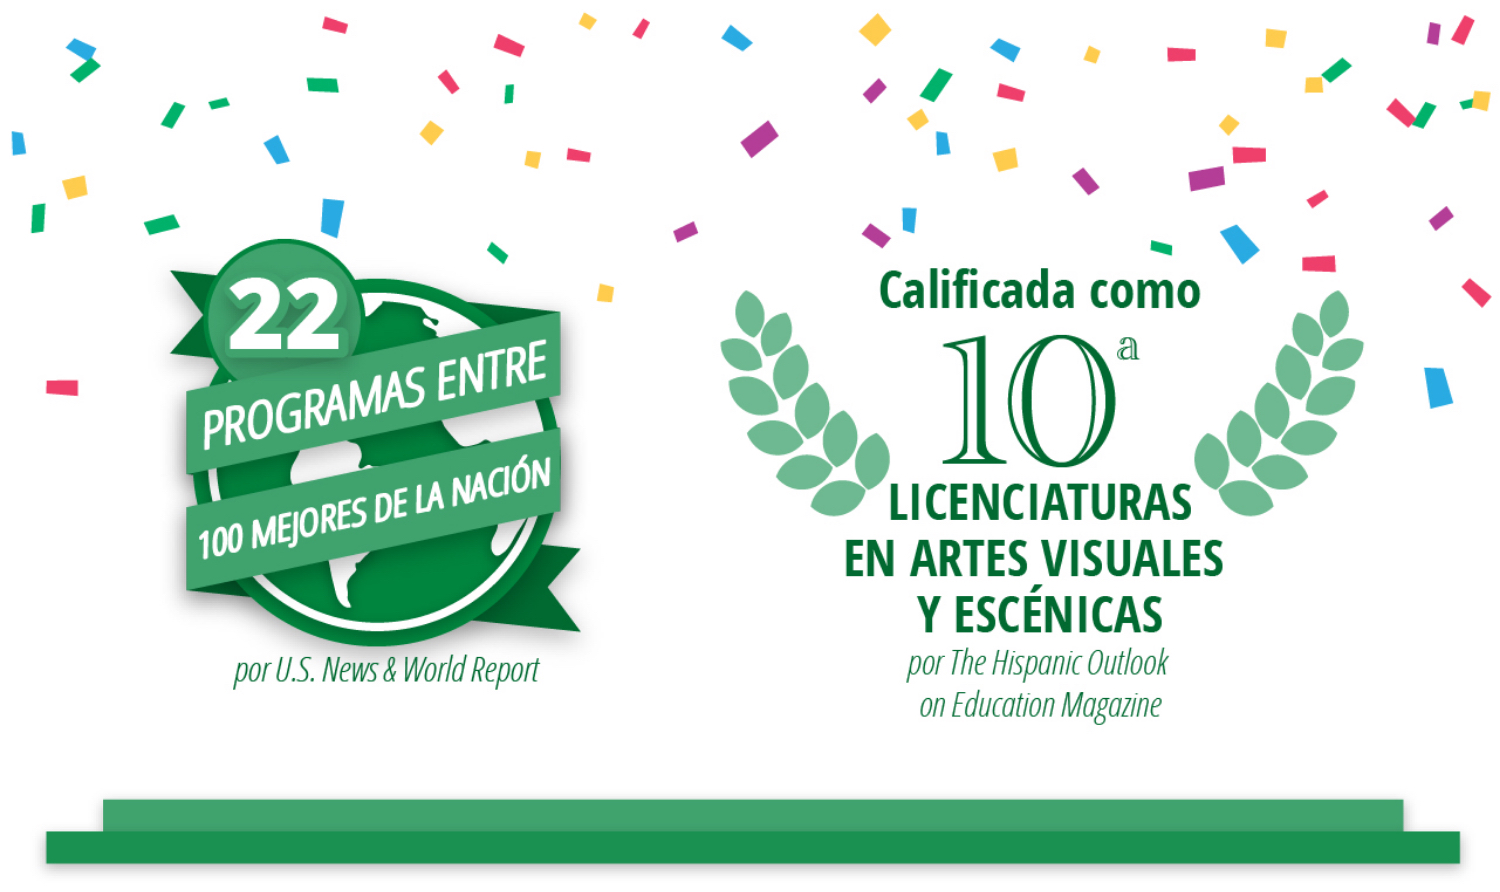 22 Programas Entre 100 Mejores de la Nacion y Calificada como 10a Licenturas en Artes Visuales y Escenicas